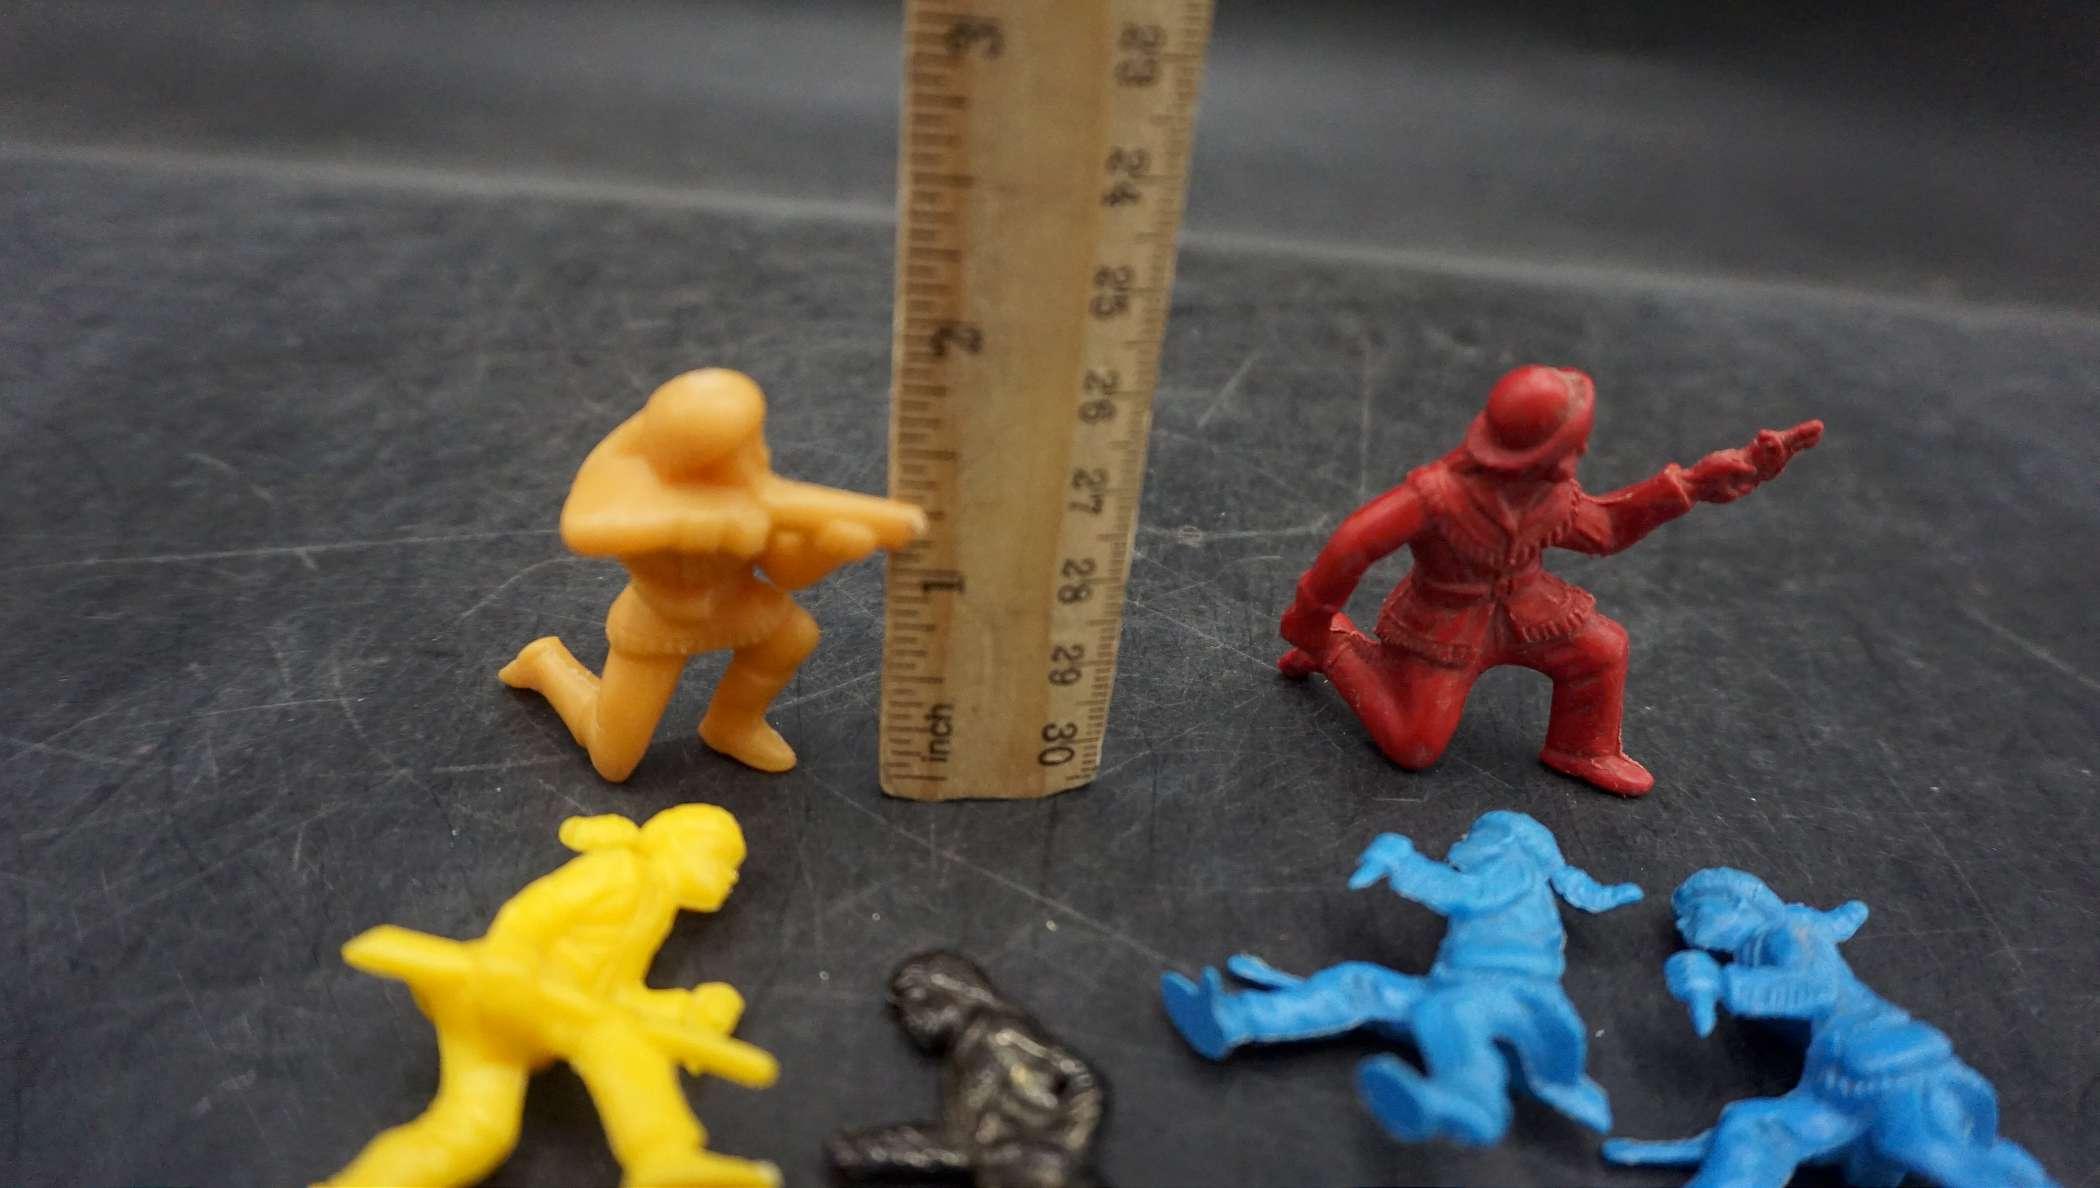 Toy Explorer Figurines